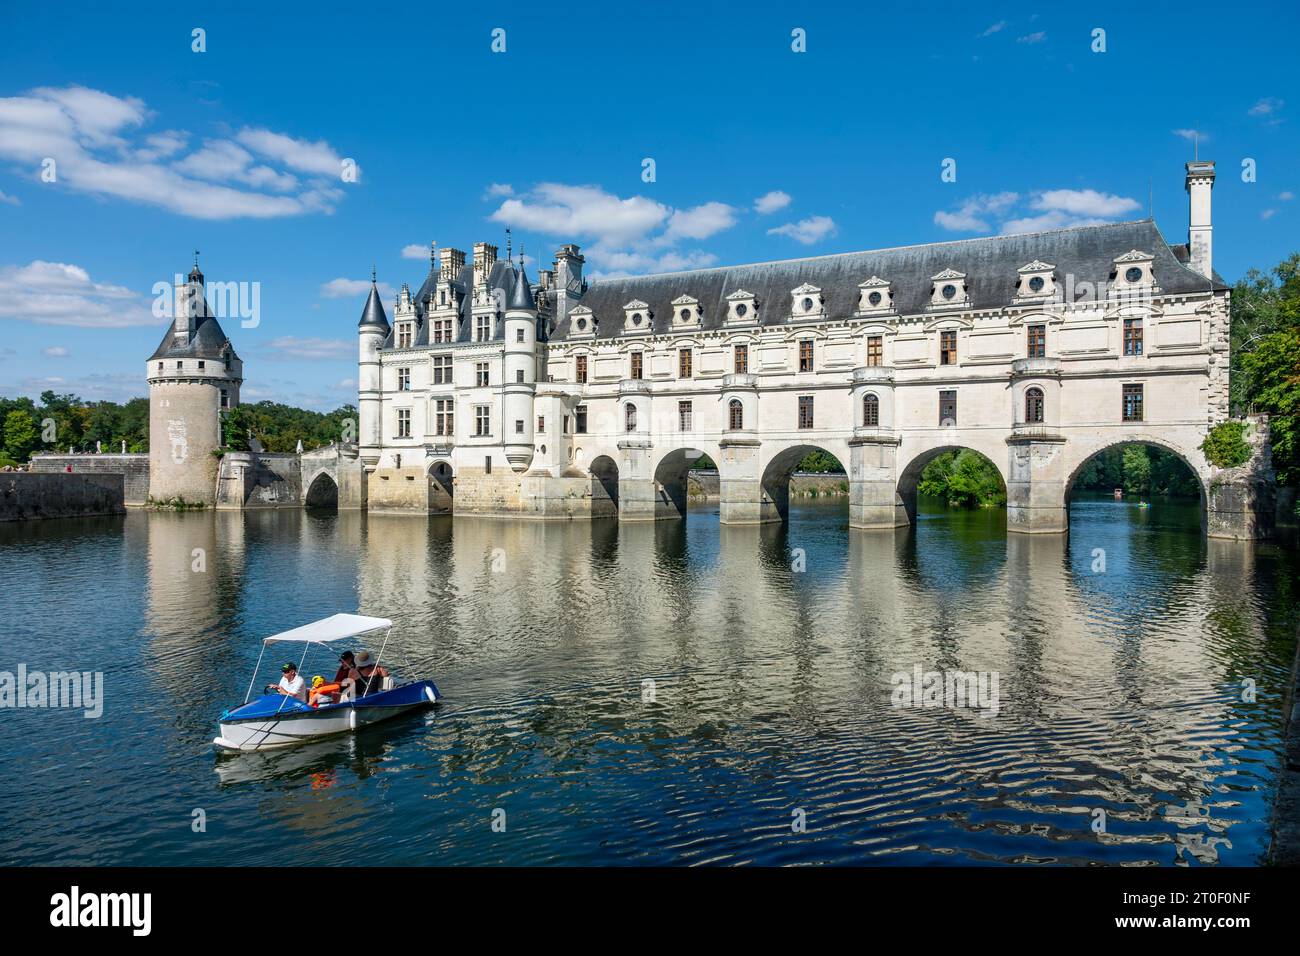 Le château de Chenonceau est un château à douves. Son bâtiment principal se dresse sur la rive nord du cher depuis 1522, tandis que la galerie, achevée en 1576, enjambe la rivière. Bien que Chenonceau se trouve sur le cher, il est compté parmi les châteaux de la Loire. Banque D'Images